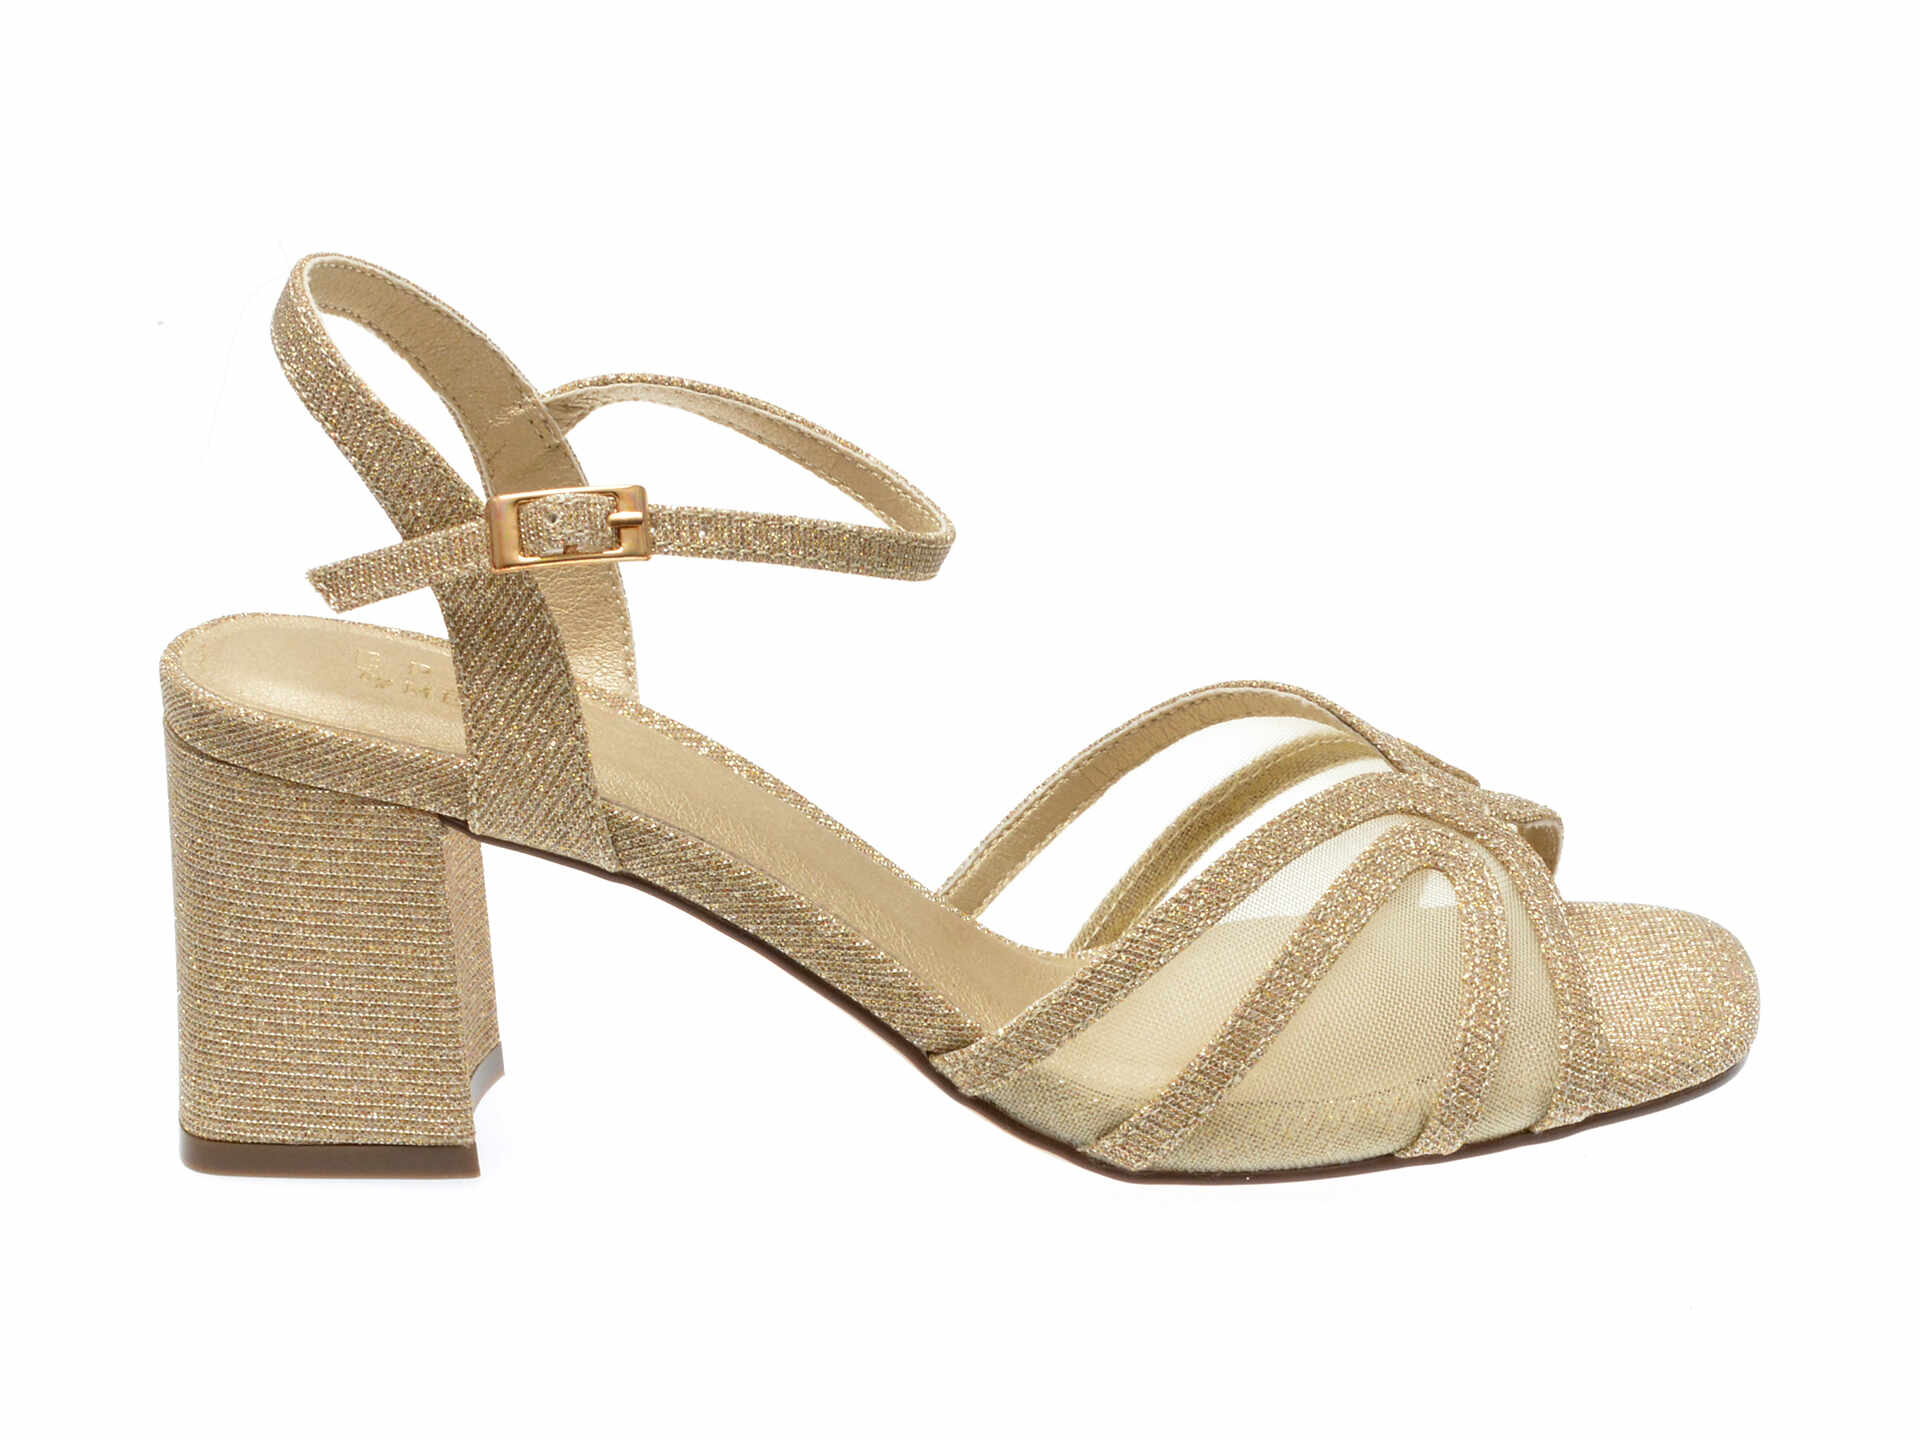 Sandale casual EPICA BY MENBUR aurii, 25606, din material textil